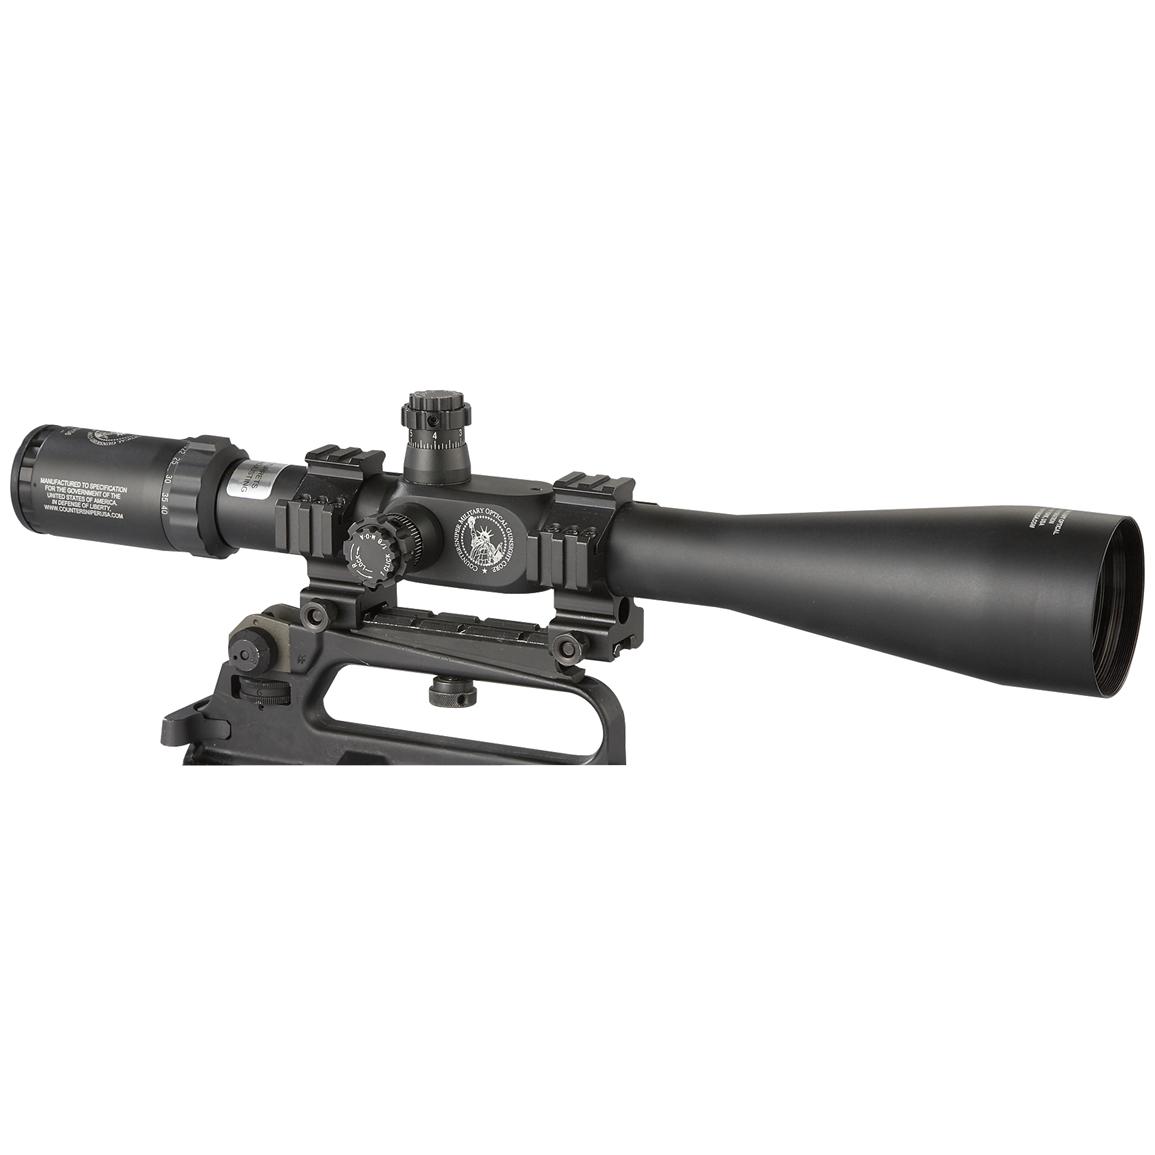 Counter Sniper 10-40x56mm Scope